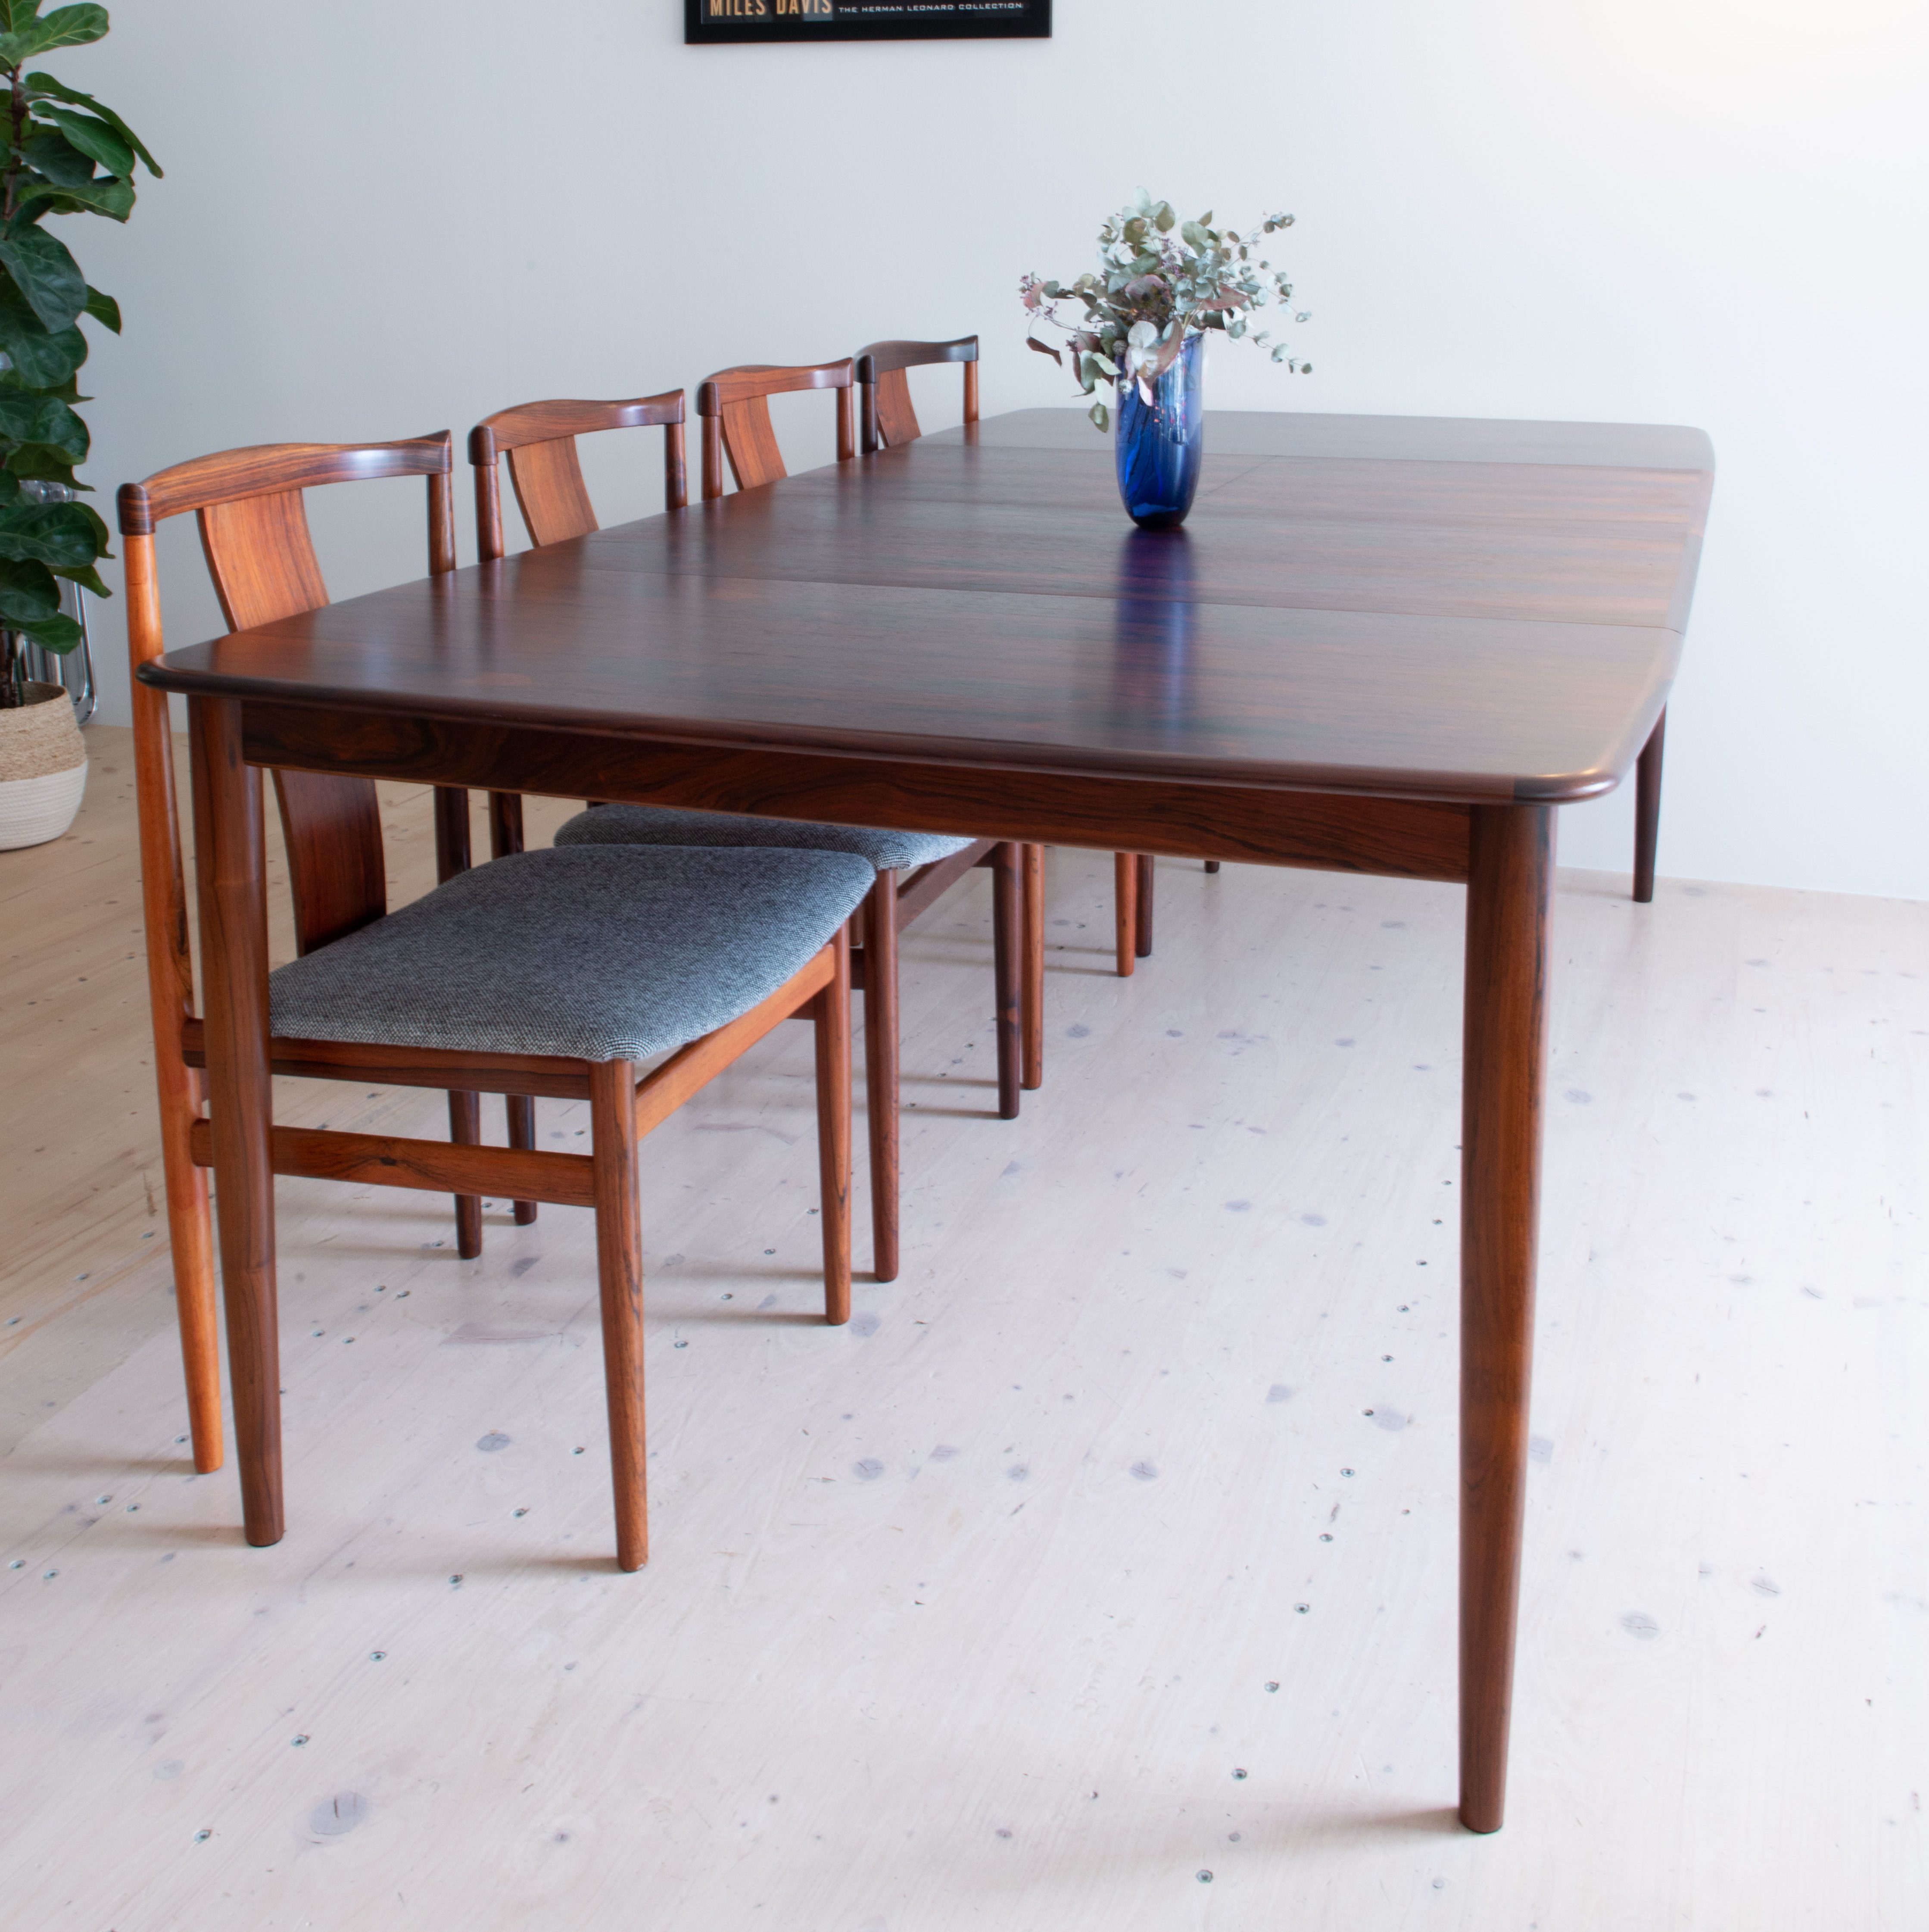 Henry Rosengren Hansen Rosewood Dining Table. Made in Denmark. Available at heyday möbel, Grubenstrasse 19, 8045 Zürich, Switzerland.